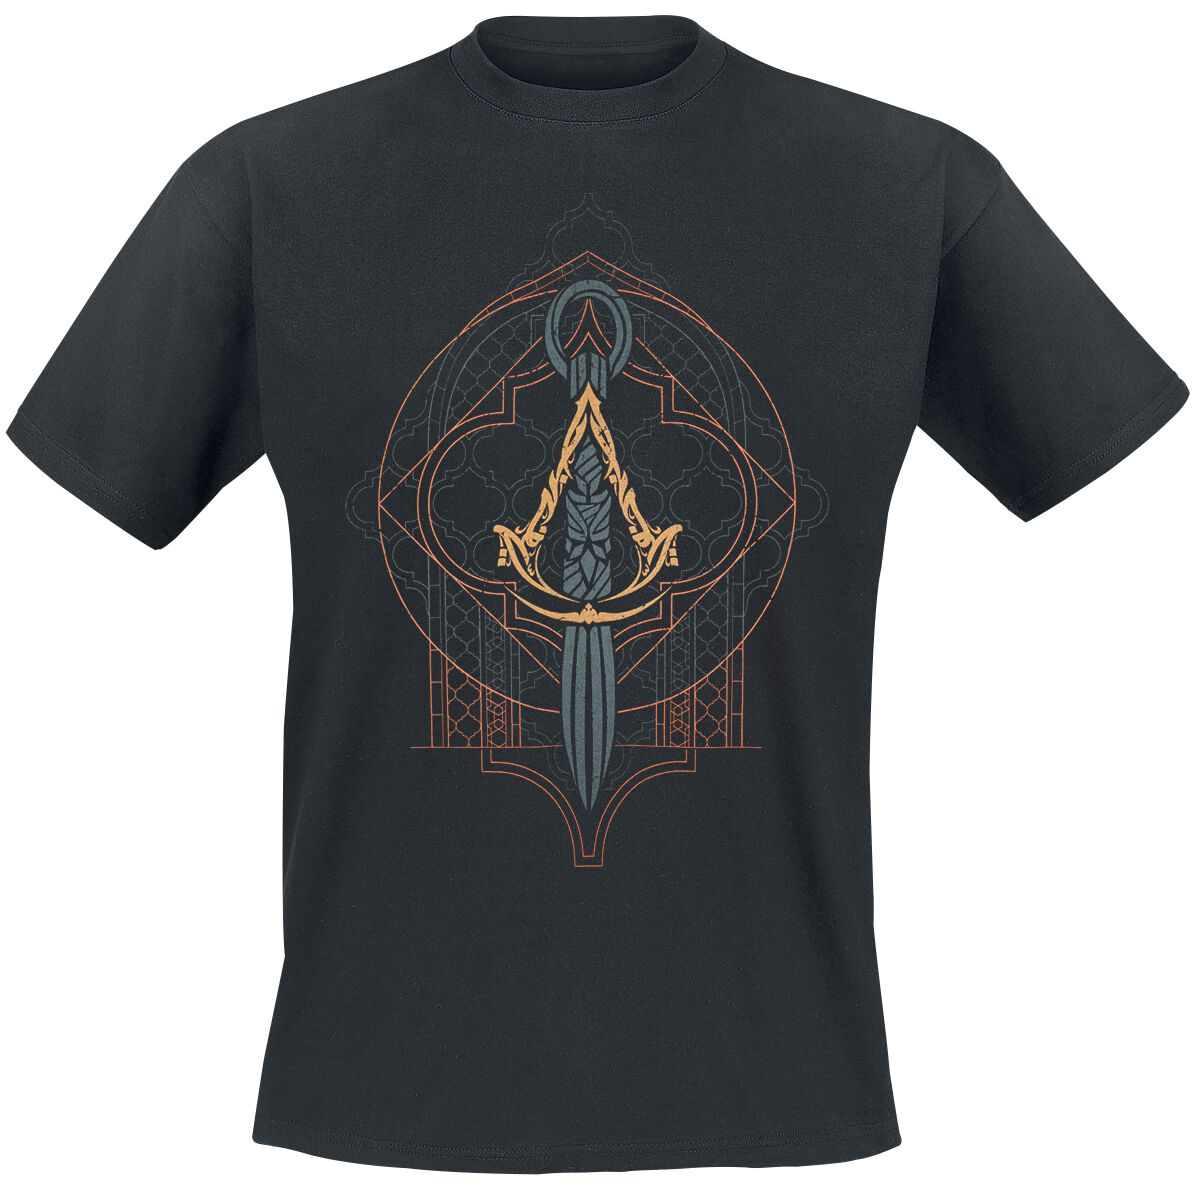 Assassin`s Creed - Gaming T-Shirt - Mirage - Emblem - S bis XXL - für Männer - Größe XXL - schwarz  - EMP exklusives Merchandise!